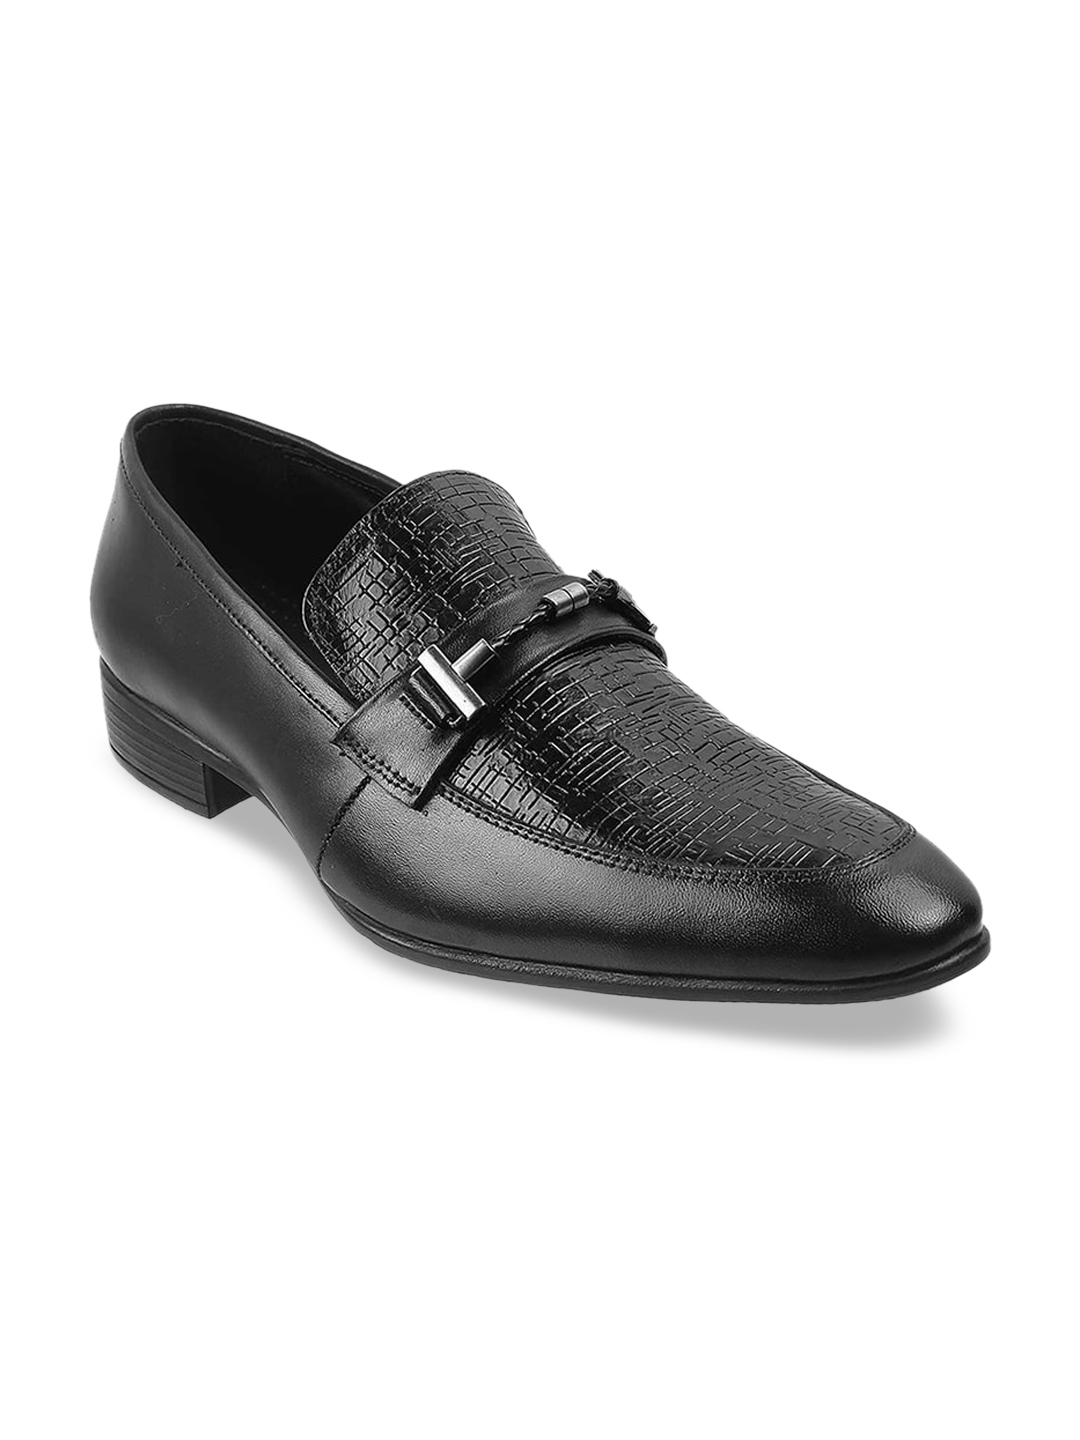 Buy Mochi Men Black Solid Leather Formal Loafers - Formal Shoes for Men ...